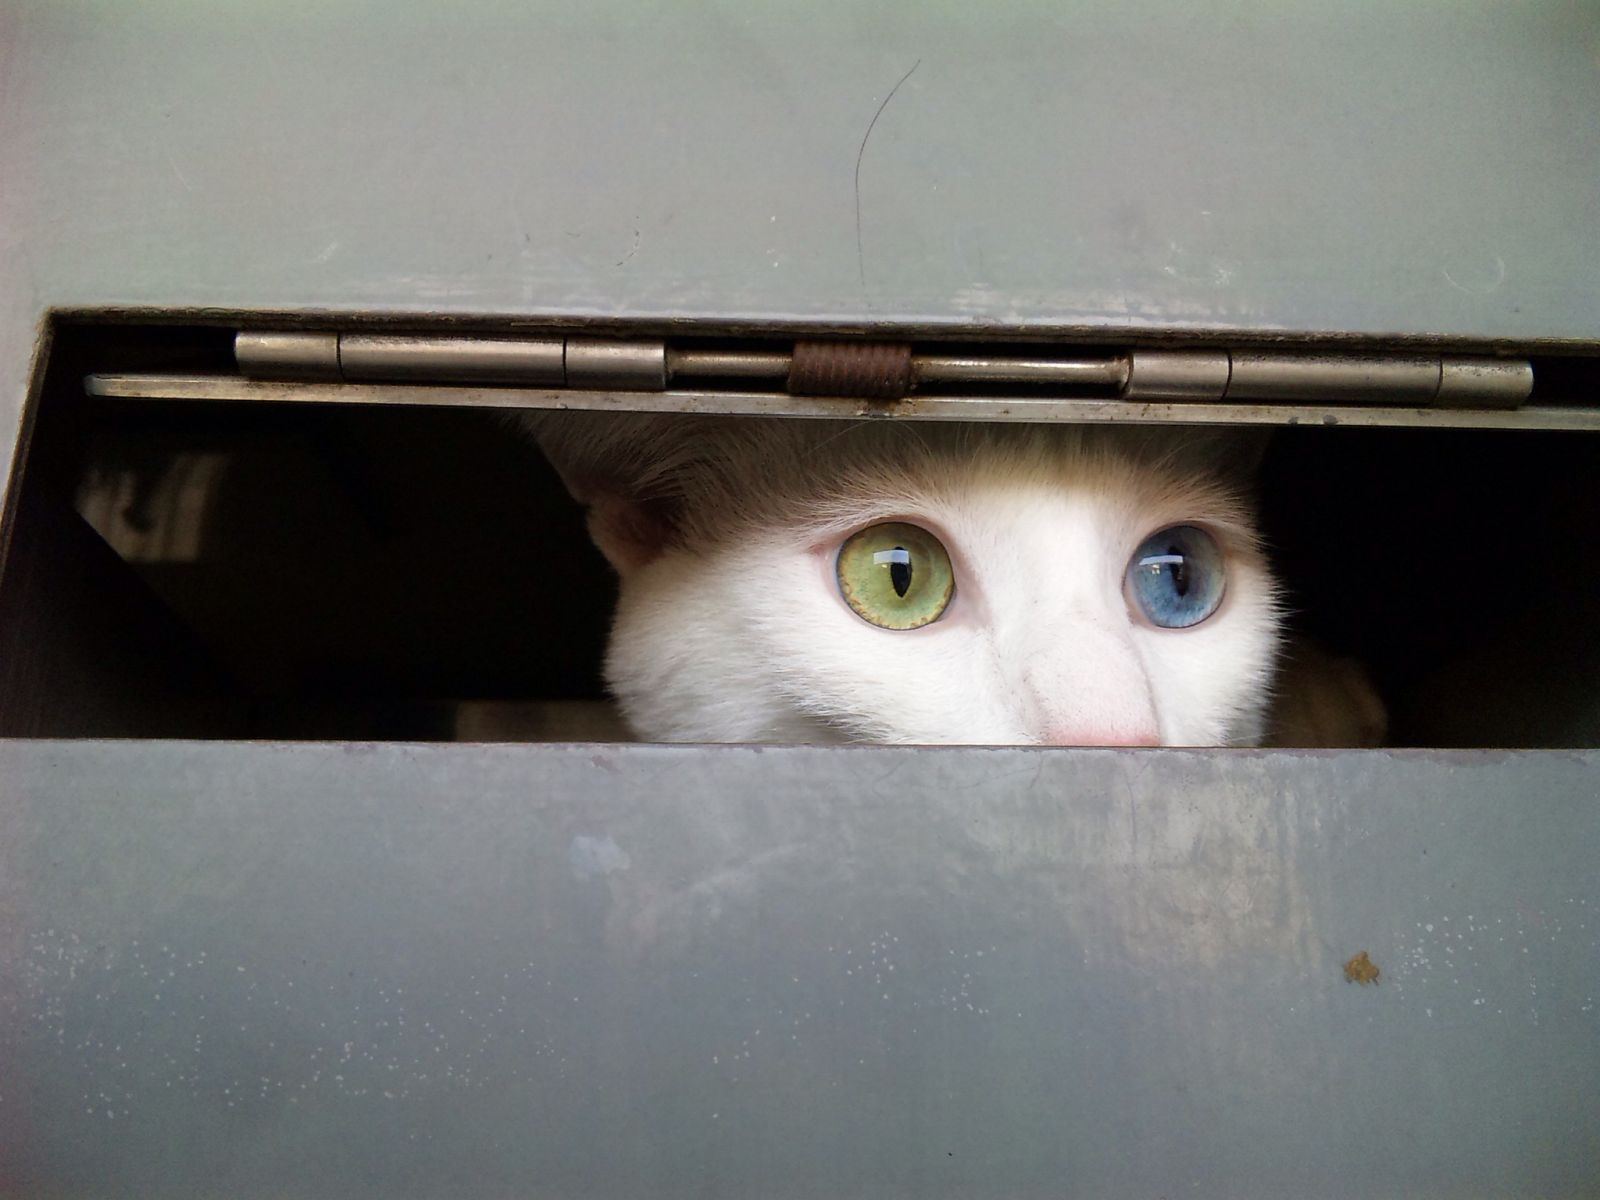 La mirada del gato cuántico de Schrödinger está dirigida por la curiosidad